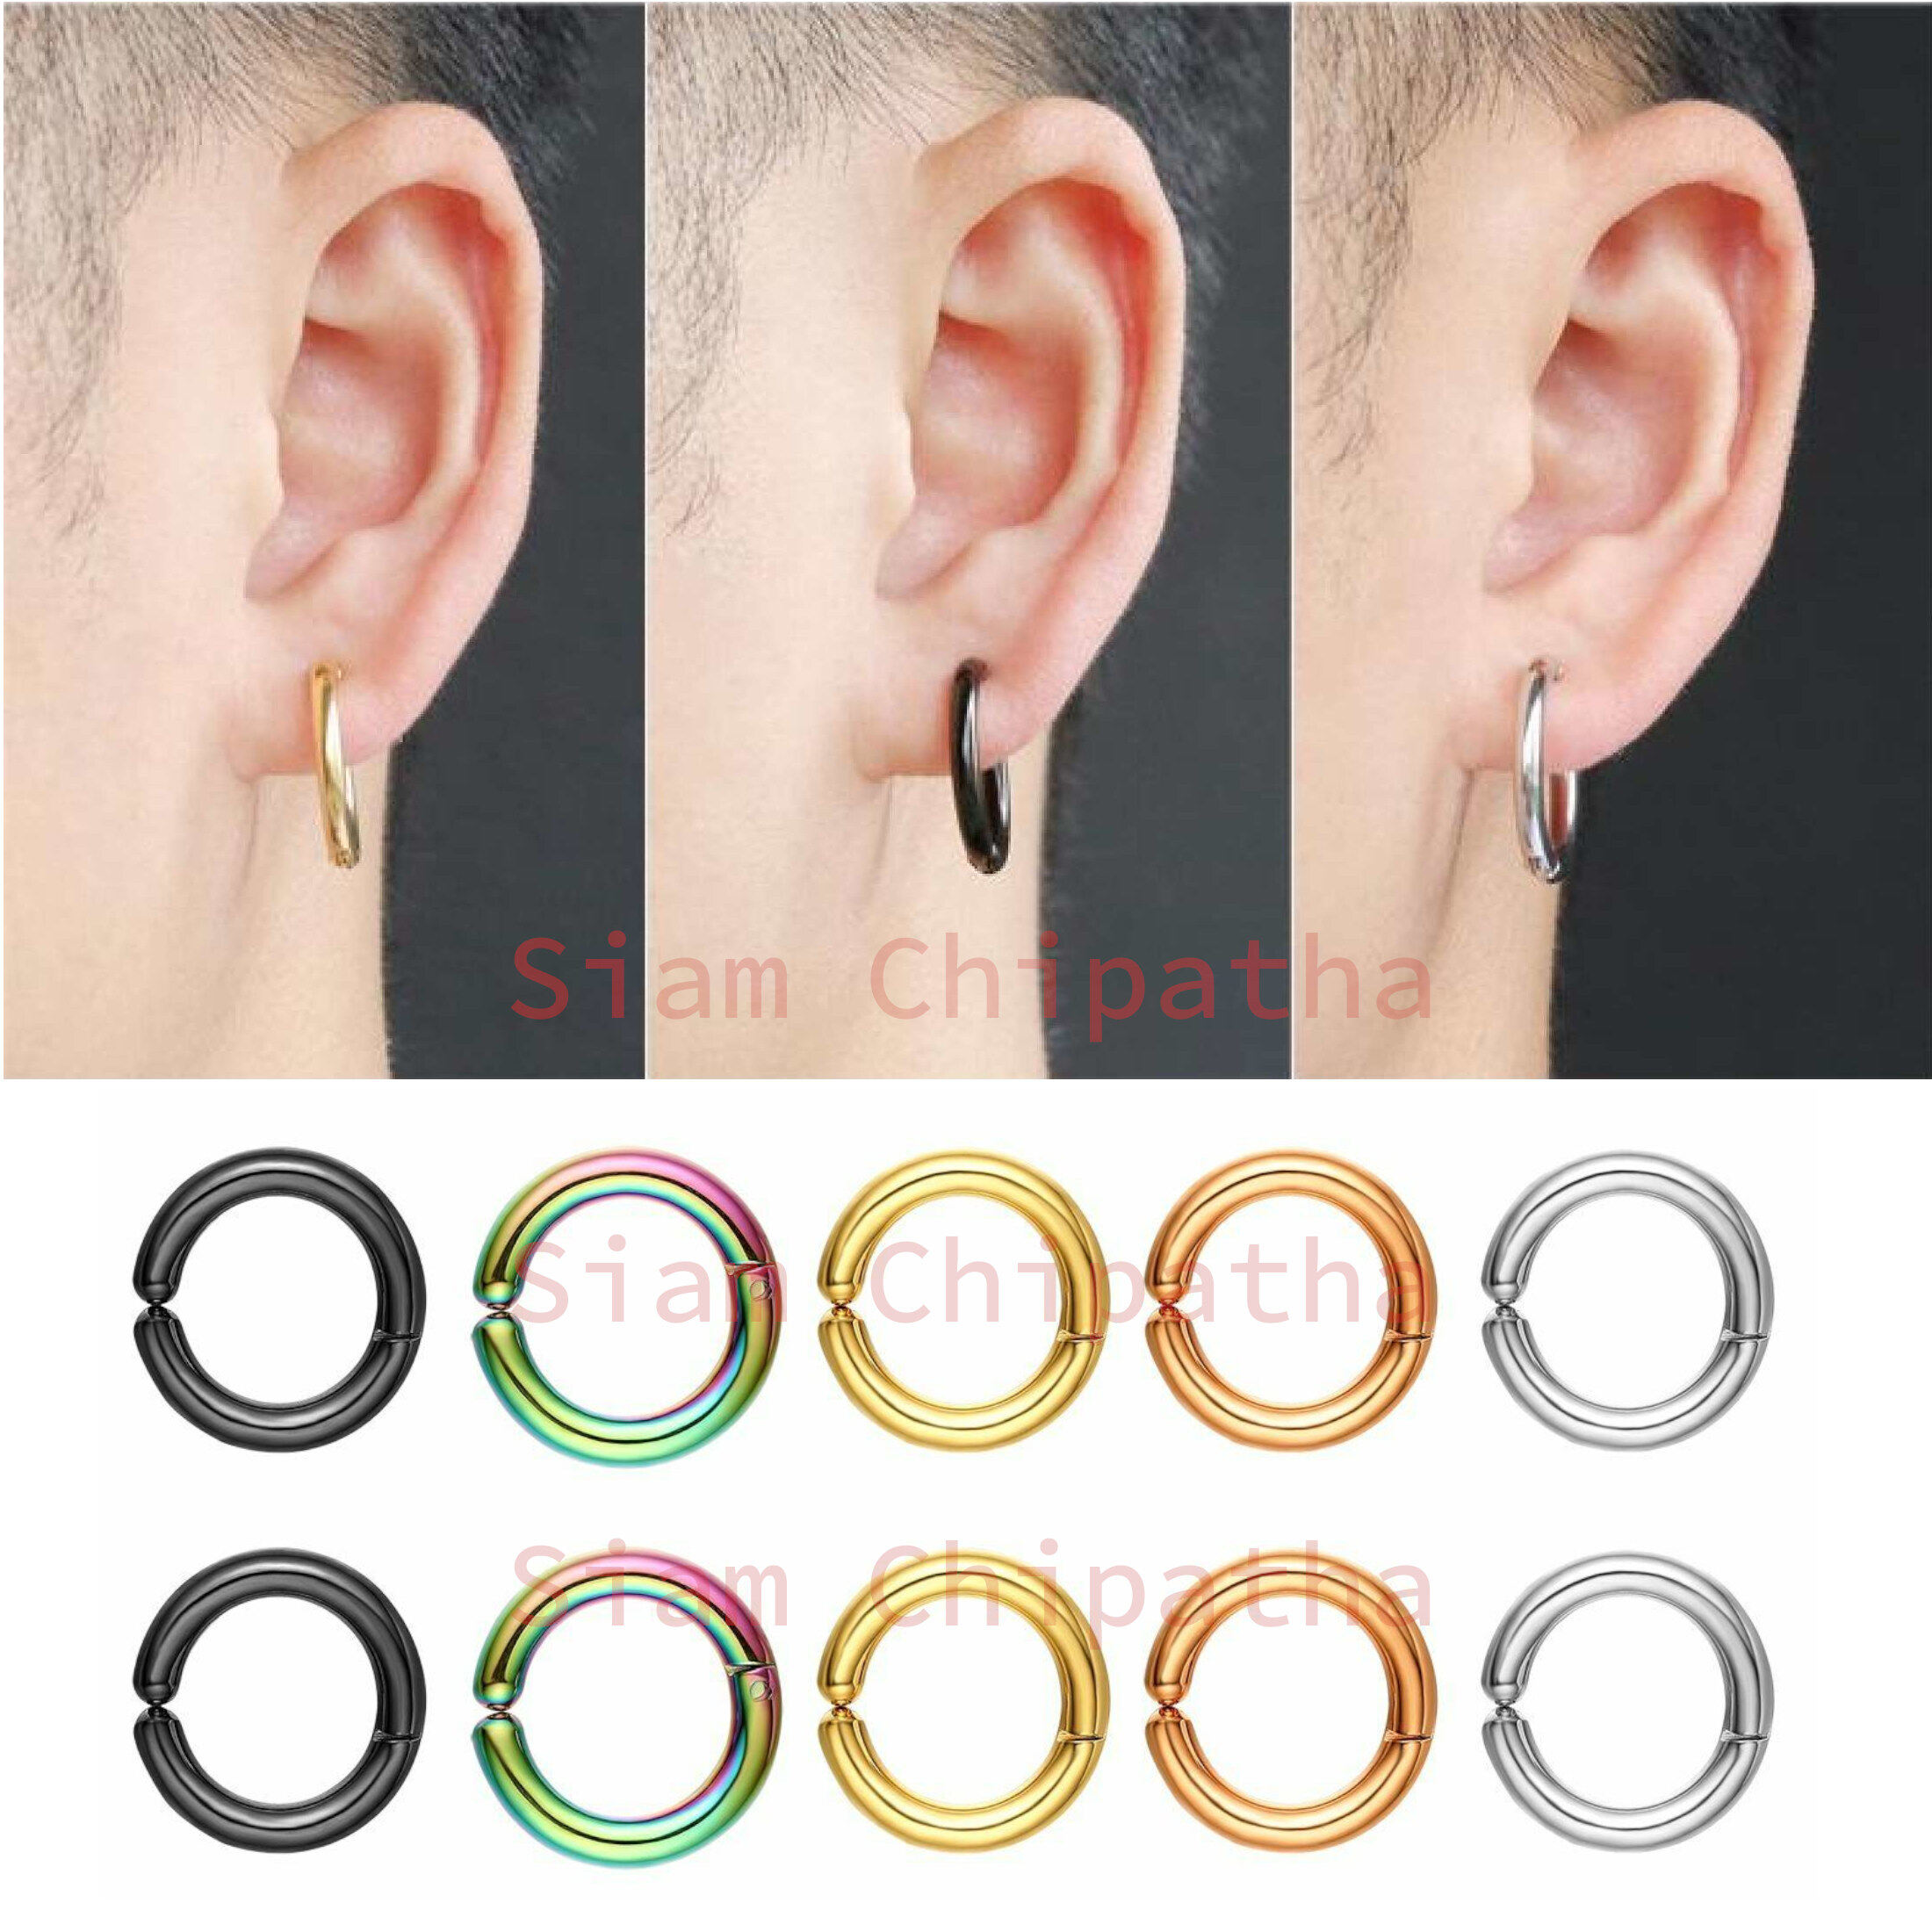 ต่างหูหนีบสไตล์เกาหลี. ไม่จำเป็นต้องเจาะ  | Simple Clip on earrings Korean Style Non piercing - 1 ข้าง